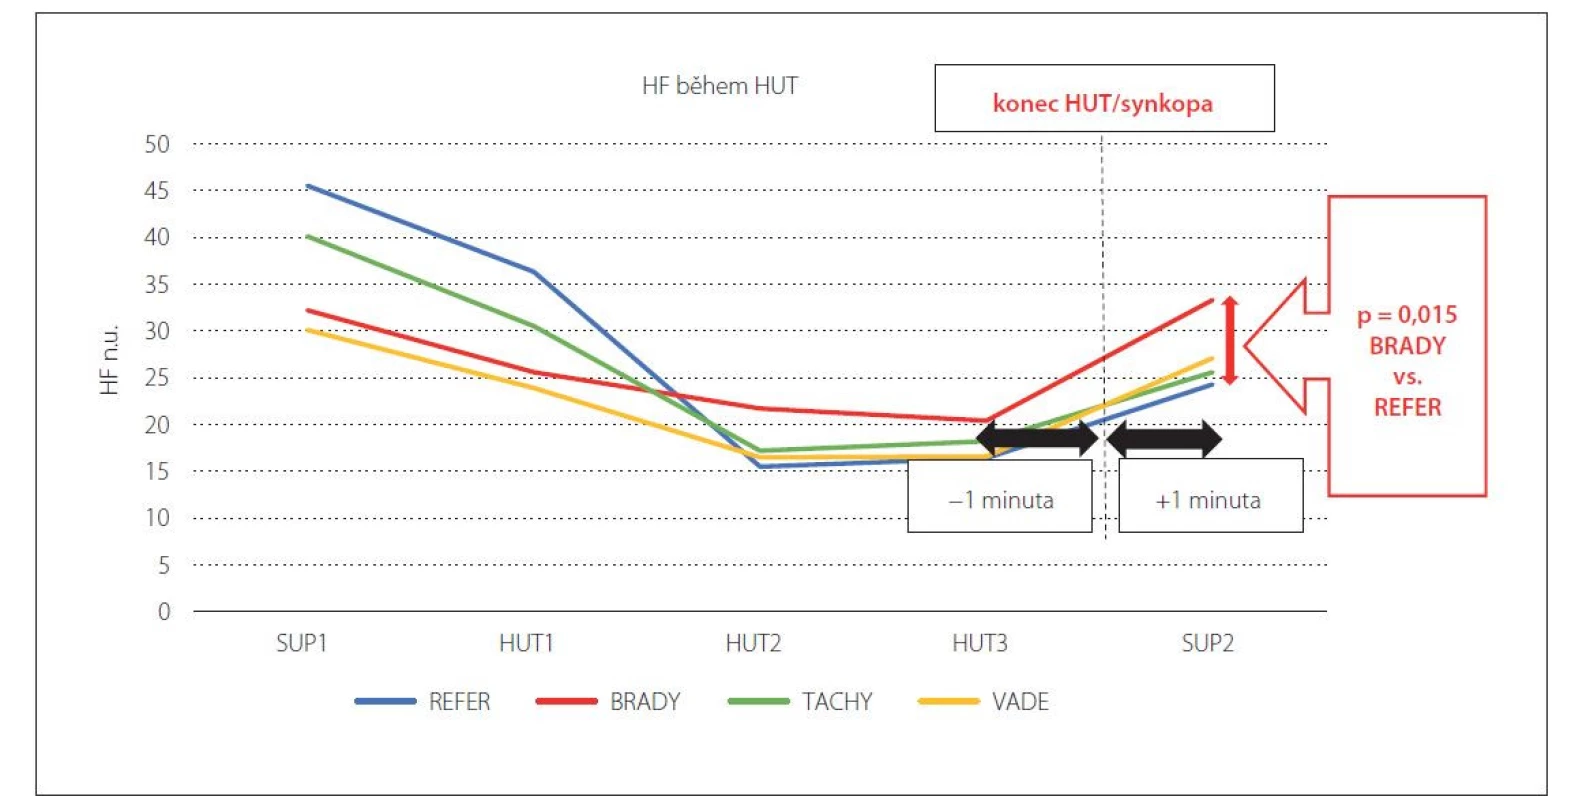 Změny HF komponenty variability srdeční frekvence zaznamenané analýzou ultrakrátkých časových segmentů během HUT
u zkoumaných souborů pacientů.<br>
BRADY – bradykardická skupina; HF – vysokofrekvenční komponenta spektrální analýzy variability srdeční frekvence; HUT – head-up
tilt test; HUT1 – 1. min náklonu; HUT2 – poslední 2 min náklonu; HUT3 – poslední minuta náklonu; REFER – referenční skupina;
SUP1 – úvodní supinační poloha; SUP2 – závěrečná supinační poloha; TACHY – tachykardická skupina; VADE – vazodepresorická
skupina<br>
Fig. 1. Changes of HF component of heart rate variability recorded by analysis of ultra-short-term time segments during HUT in the
study groups.<br>
BRADY – bradycardic group; HF – high frequency component of spectral analysis of heart rate variability; HUT – head-up tilt test; HUT1 – the
first minute of tilting; HUT2 – last 2 minutes of tilting; HUT3 – the last minute of tilting, REFER – reference group; SUP1 – initial supine position;
SUP2 – final supine position; TACHY – tachycardic group; VADE – vasodepressoric group